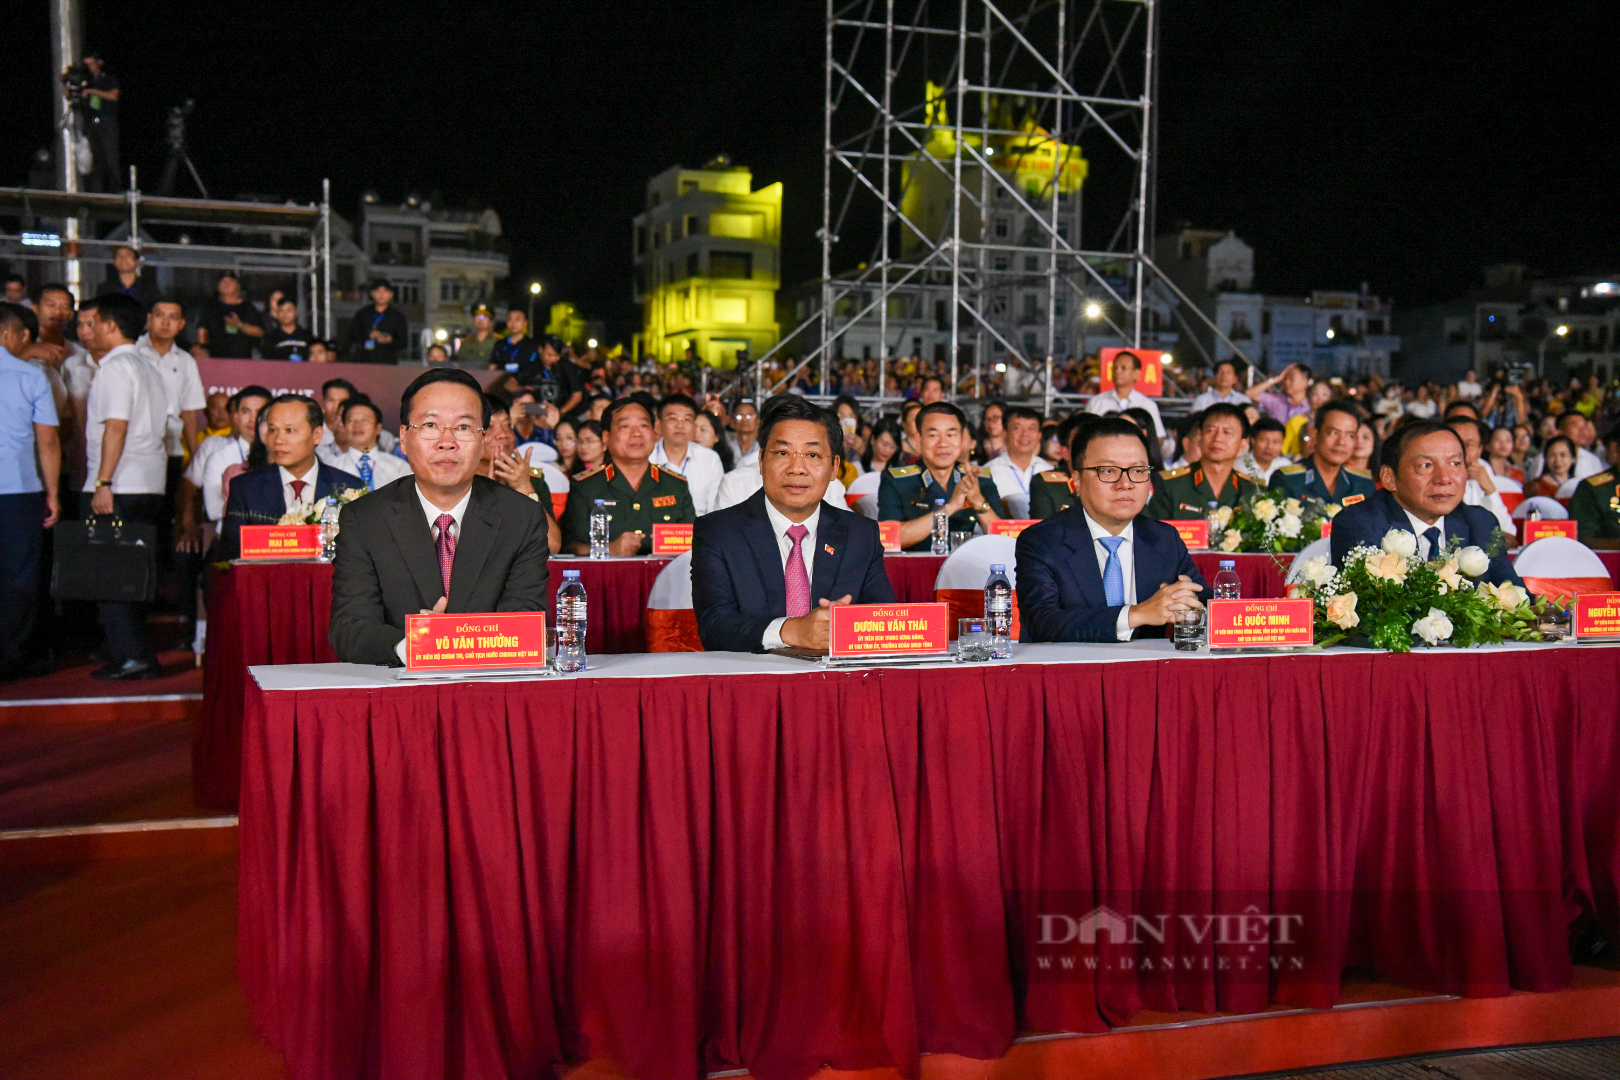 Chủ tịch nước Võ Văn Thưởng: Bắc Giang đang dần trở thành một trung tâm công nghiệp lớn của cả nước - Ảnh 1.